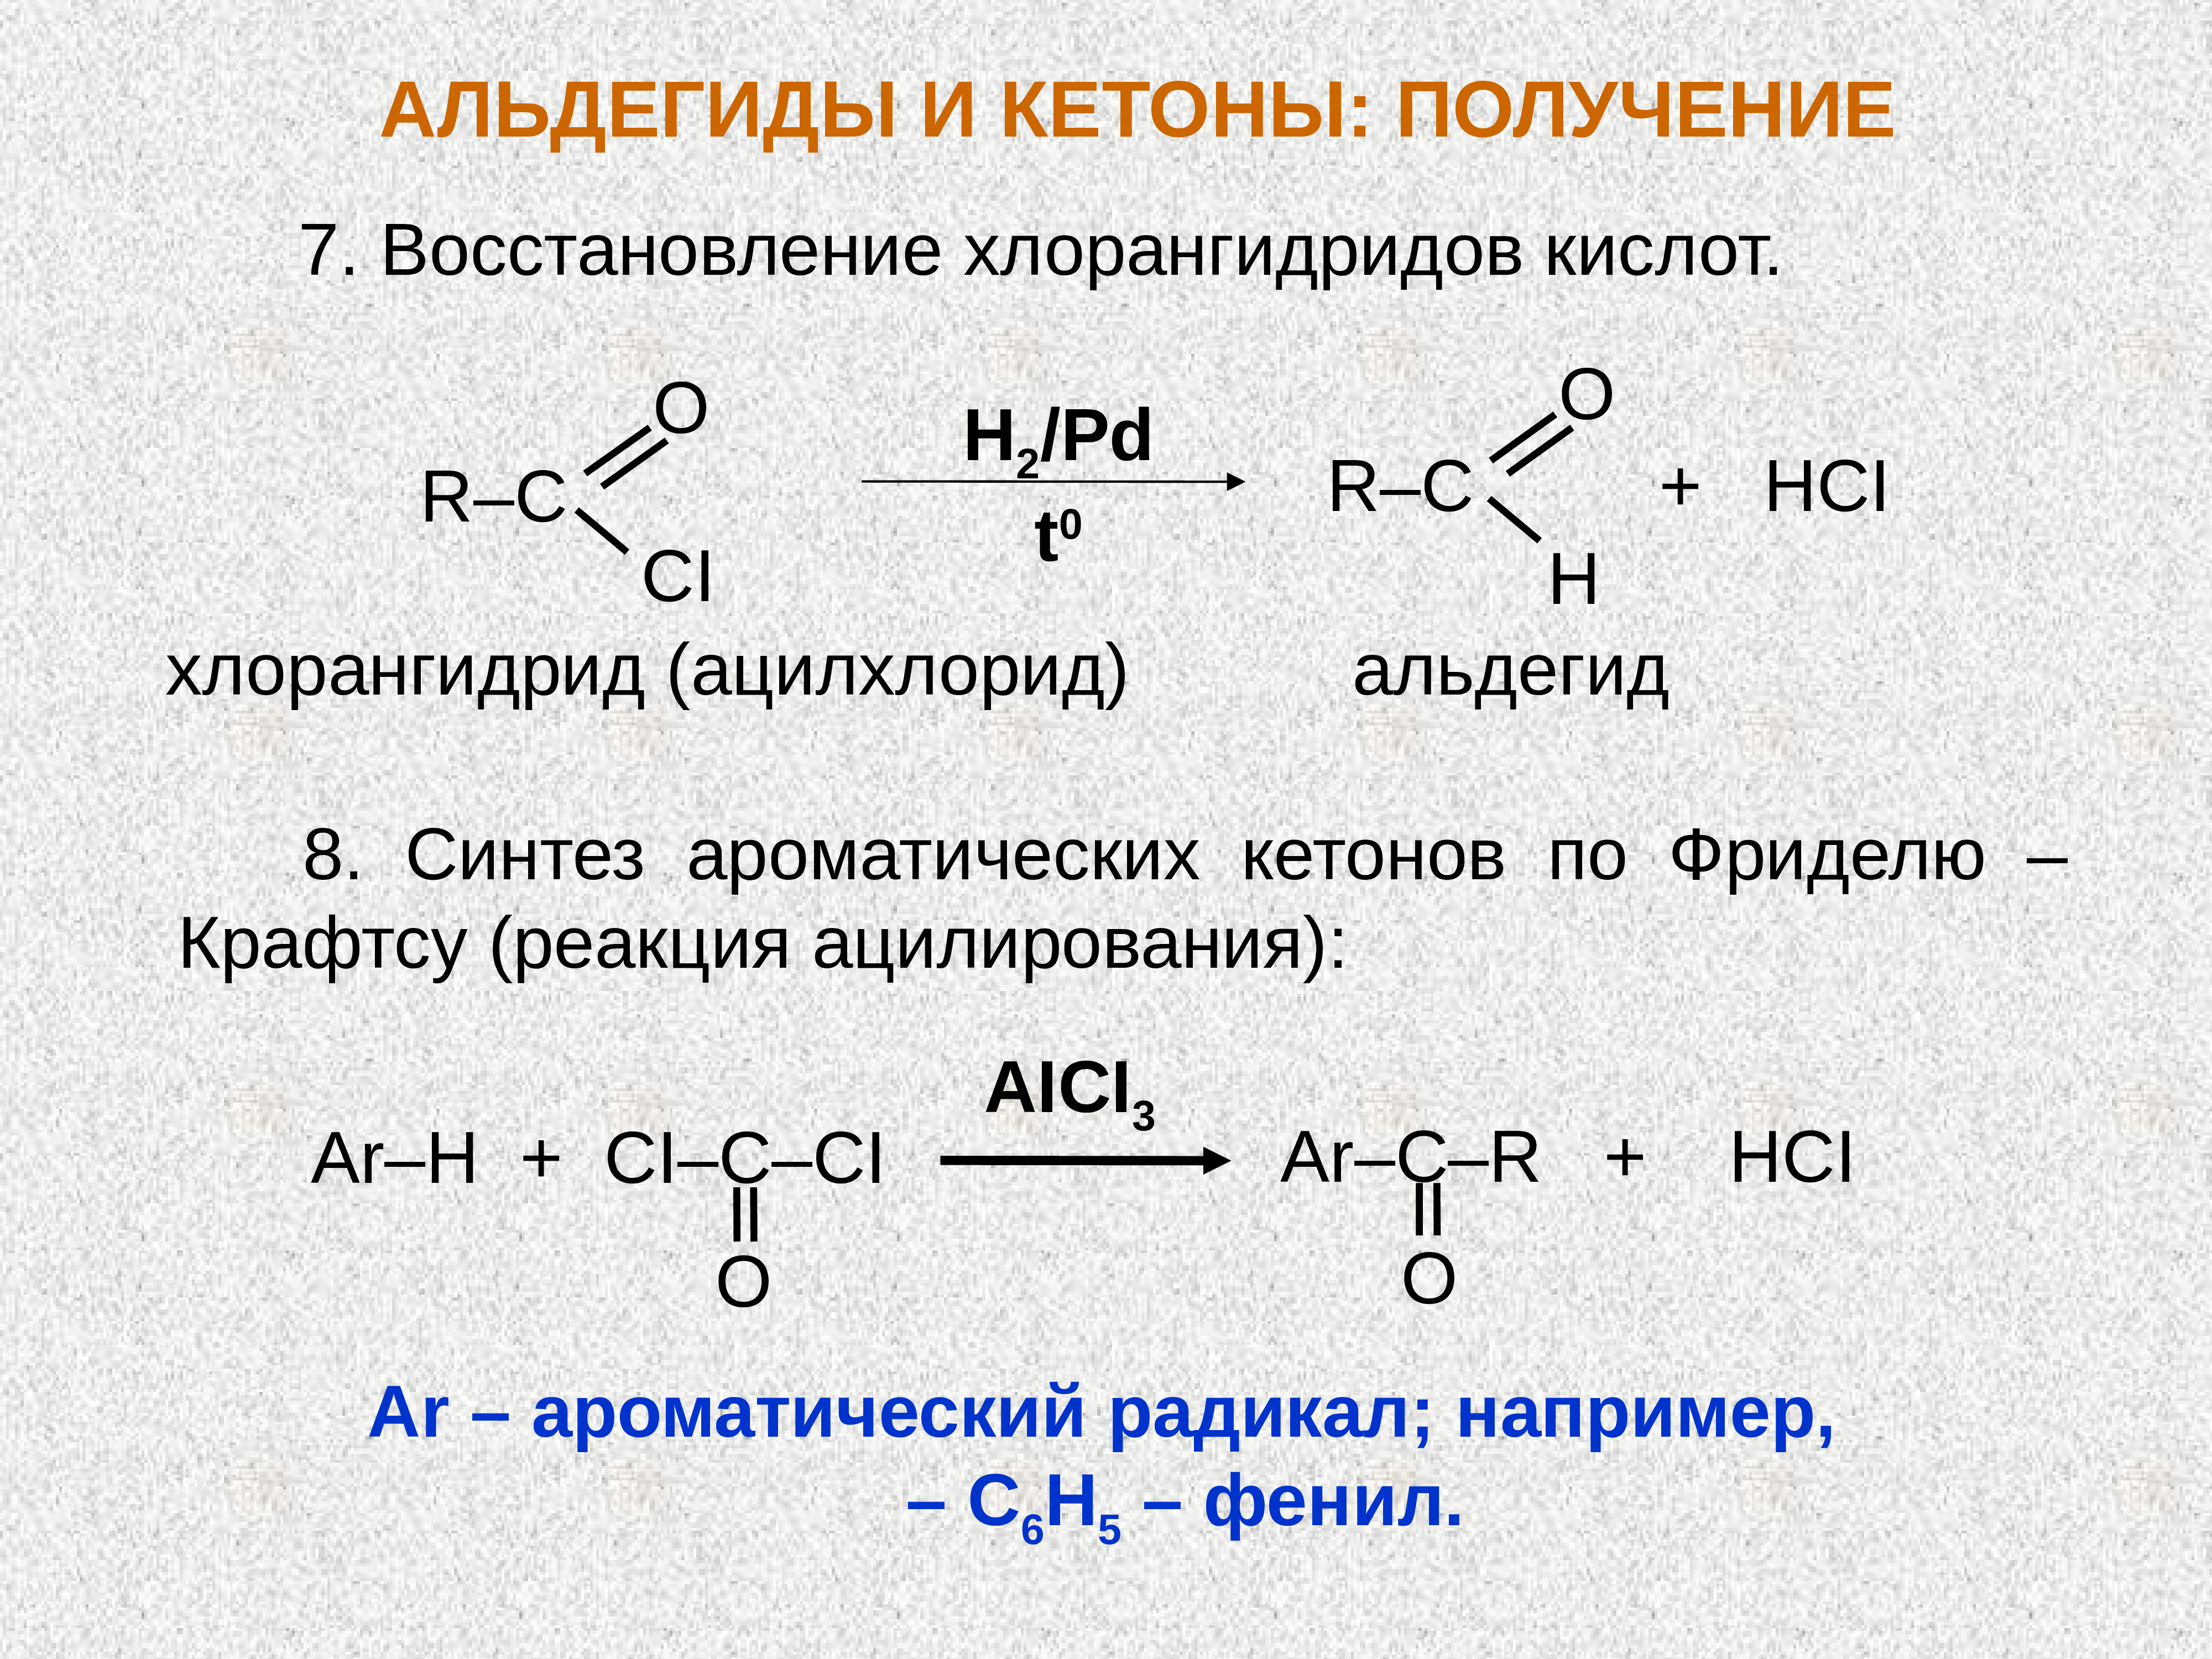 Гидролиз ацетальдегида. Восстановление хлорангидридов карбоновых кислот. Хлорангидрид уксусной кислоты с альдегидом. Синтез альдегидов и кетонов. Хлорангидрид в альдегид.